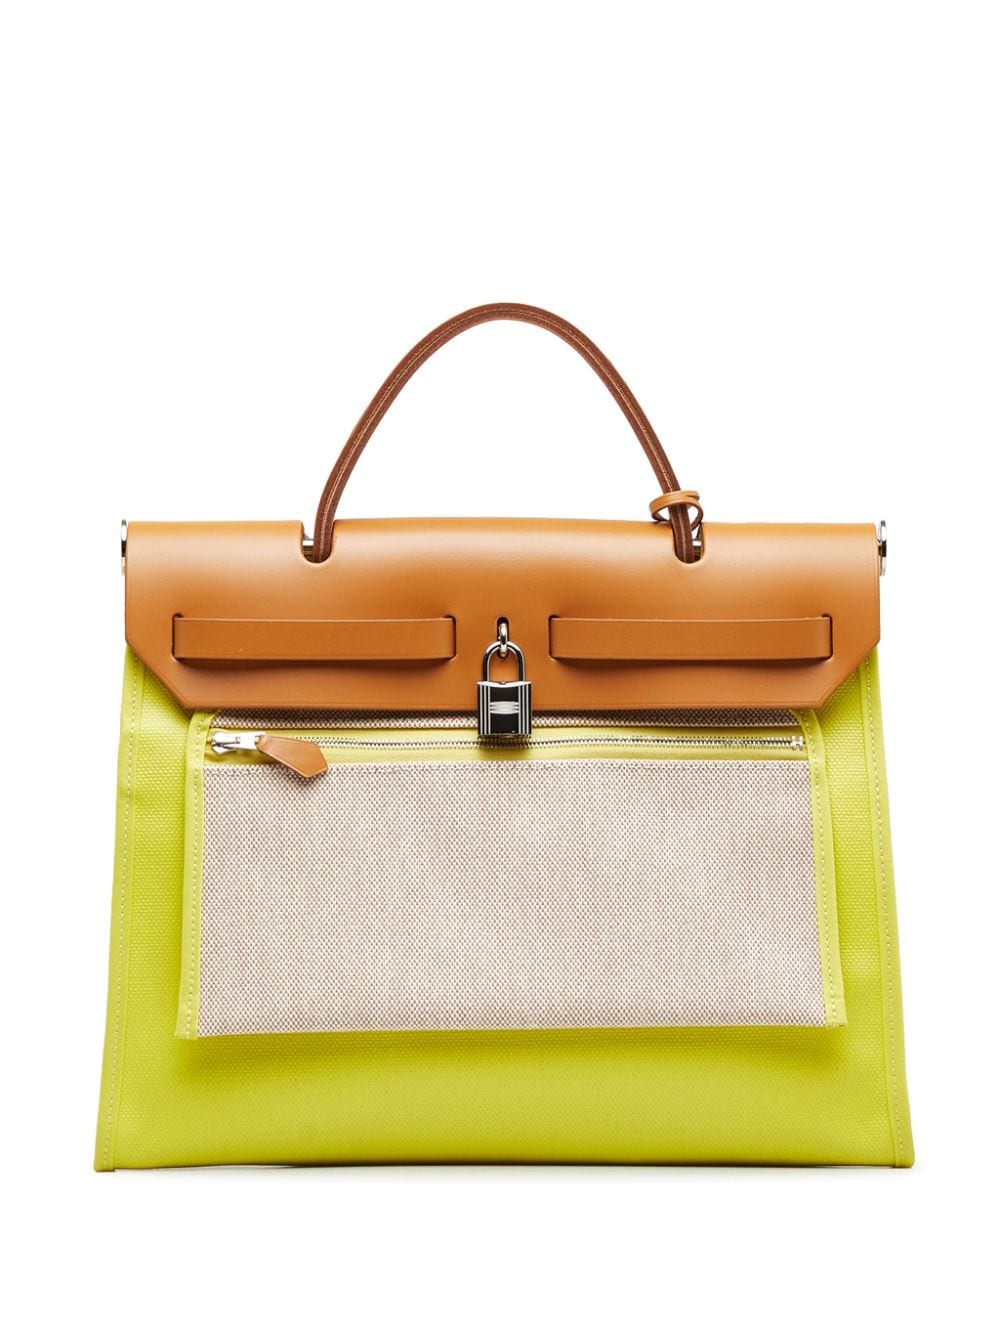 Hermès 2018 pre-owned Herbag Zip 31 two-way handbag - Geel